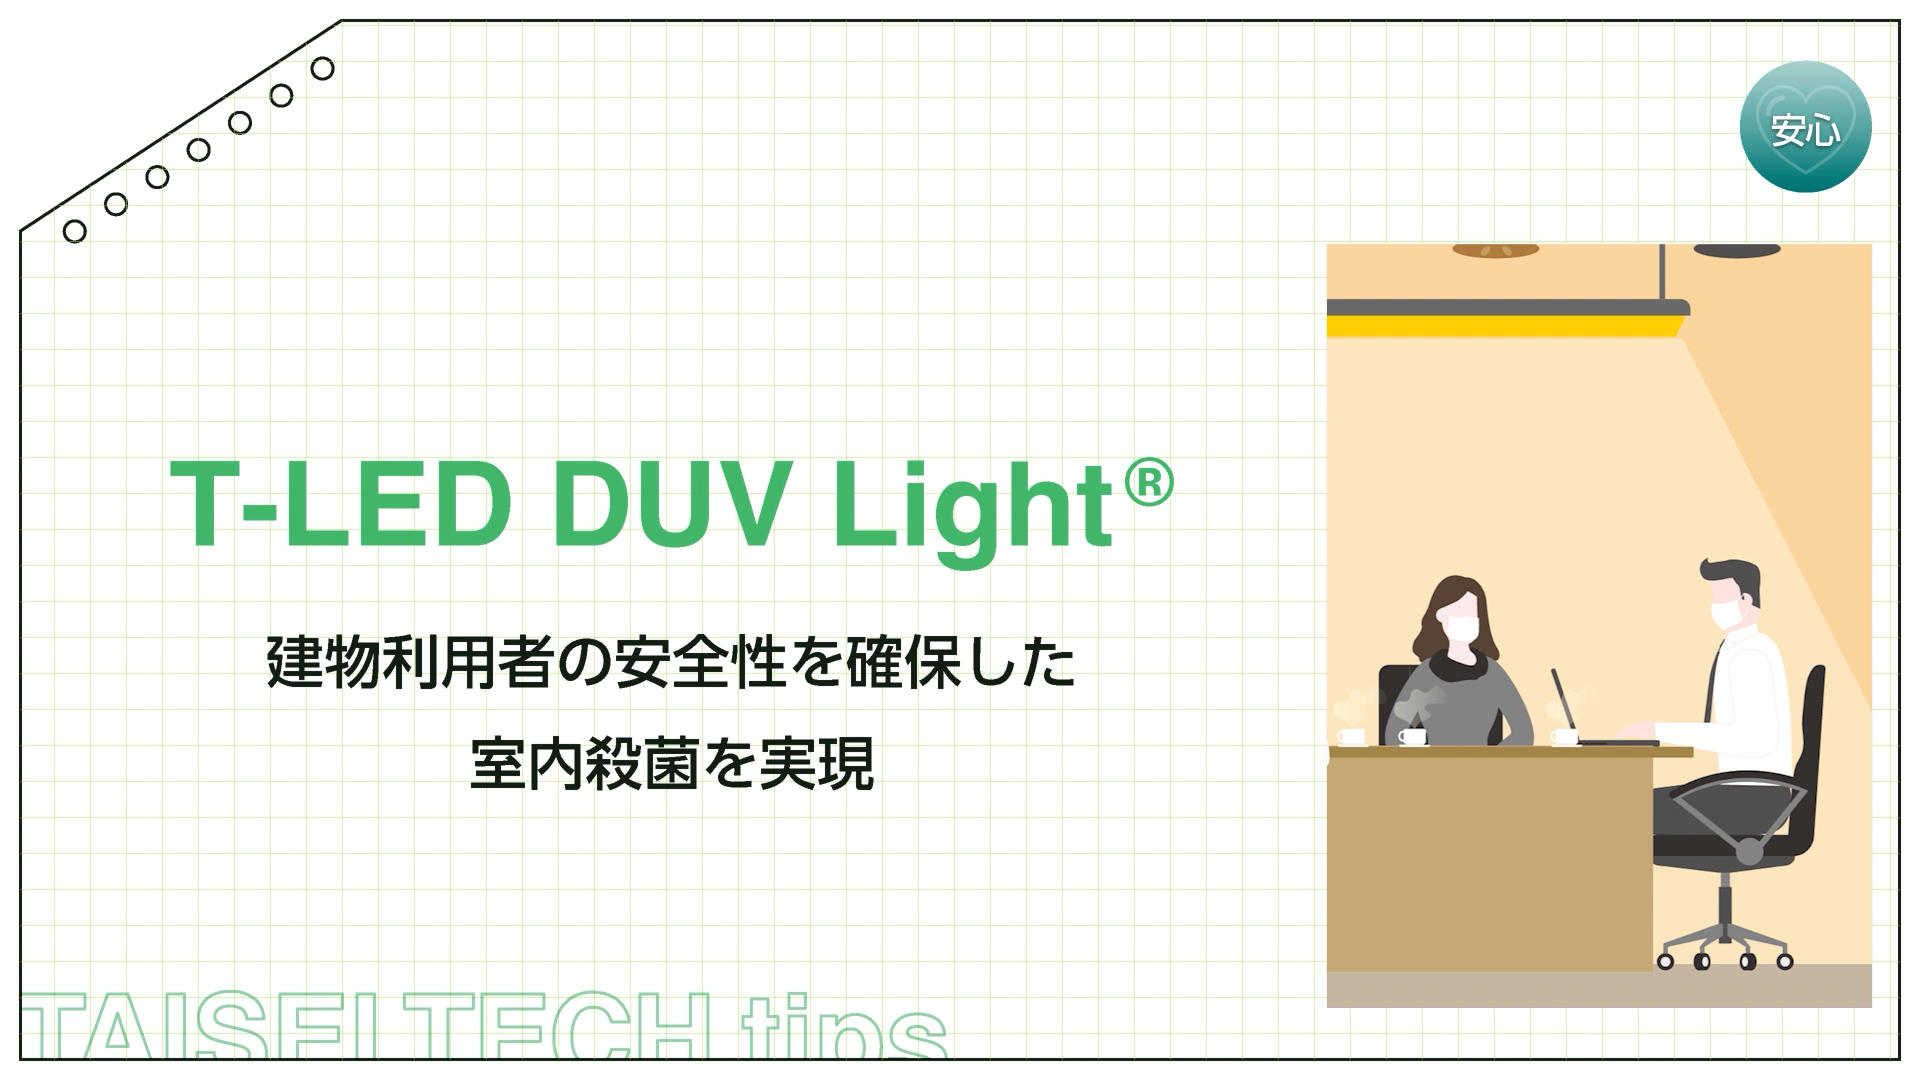 T-LED DUV Light